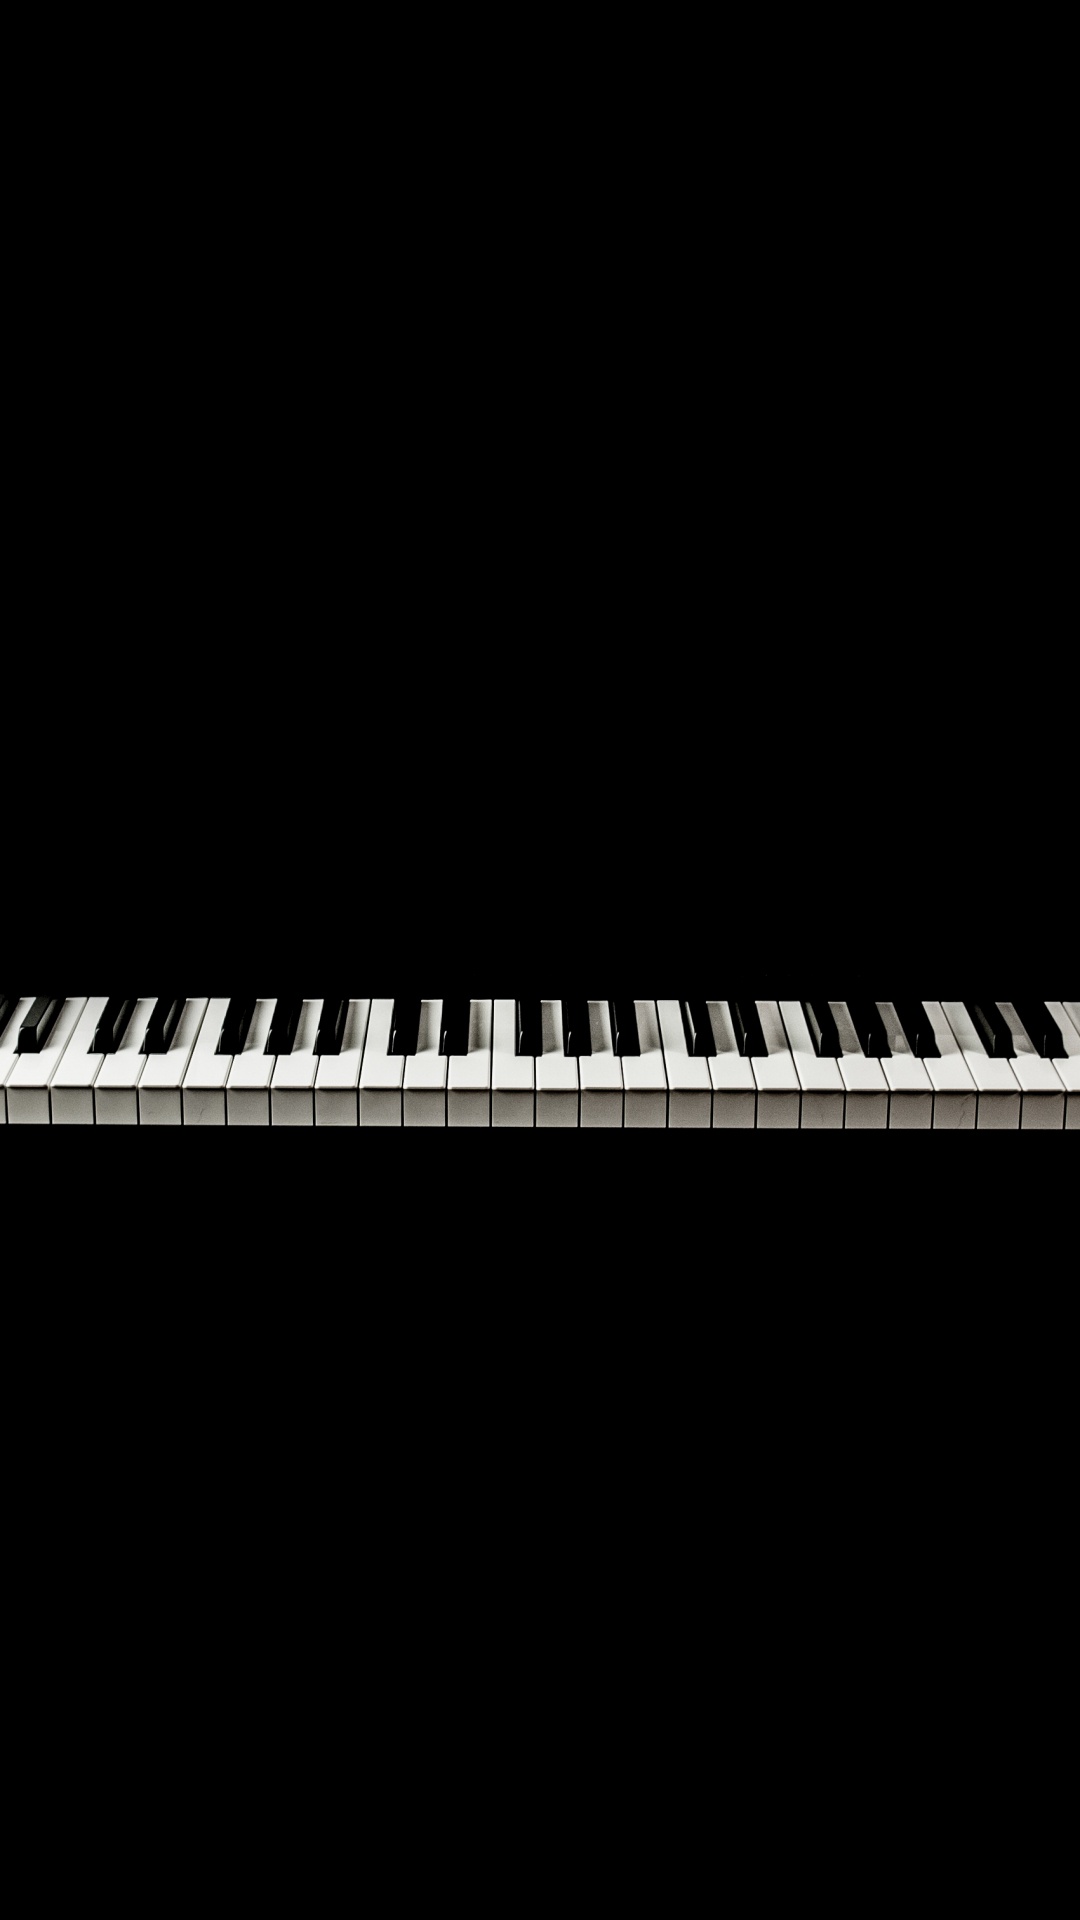 音乐键盘, 数字钢琴, 电子琴, 钢琴, 键盘 壁纸 1080x1920 允许